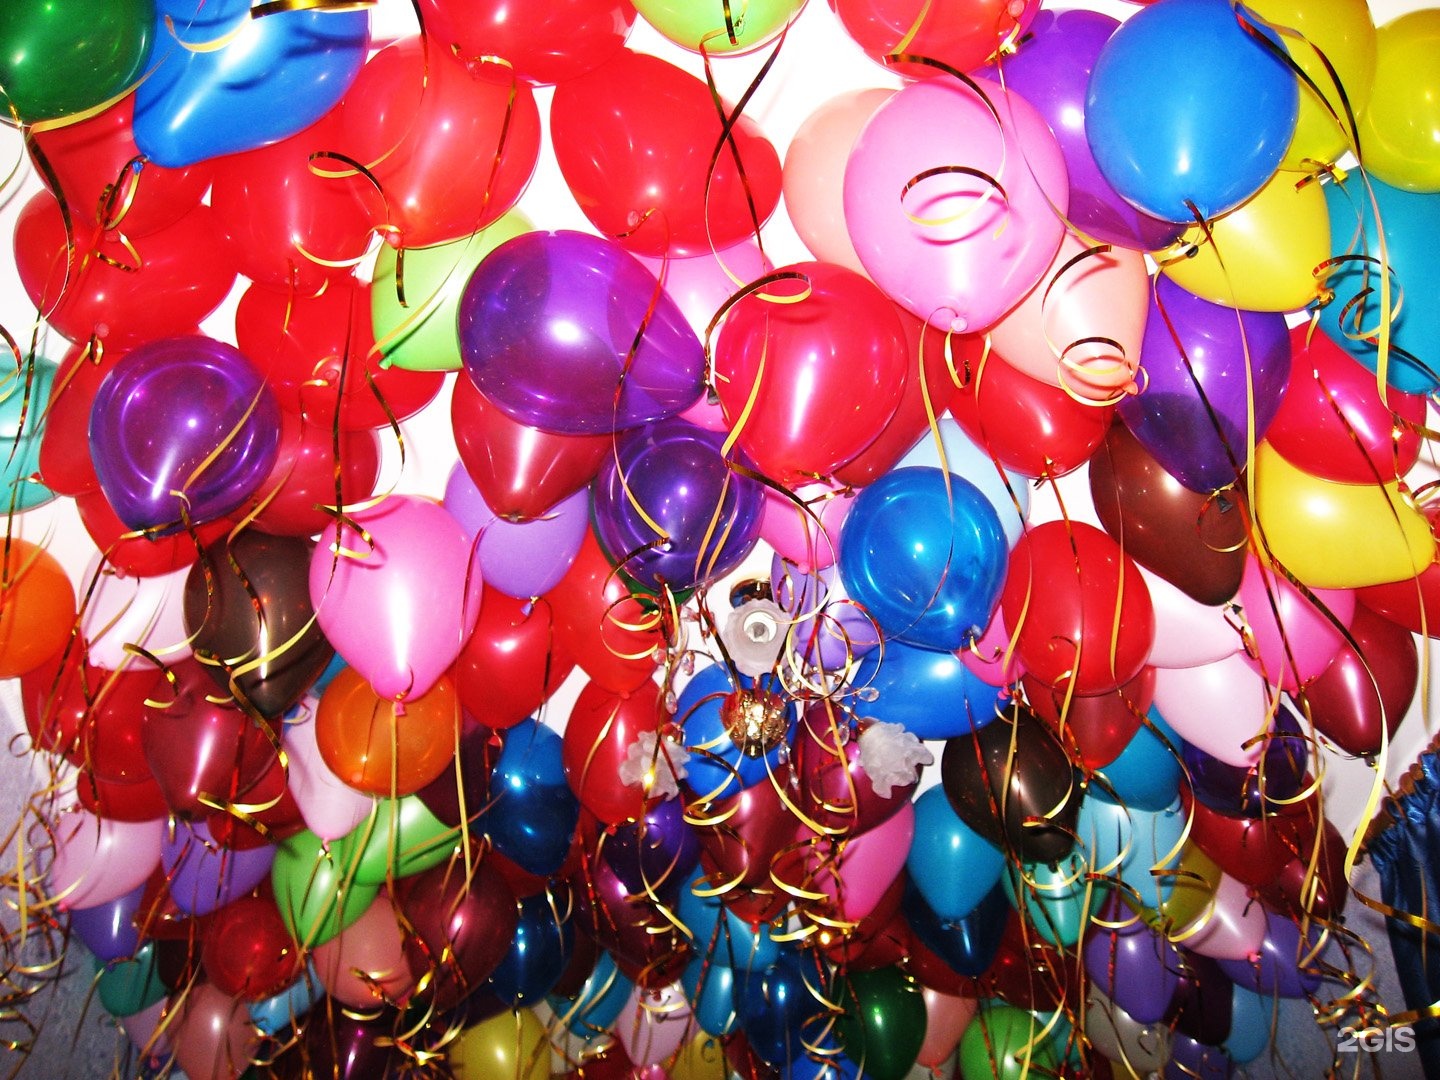 шарики на день рождения картинки